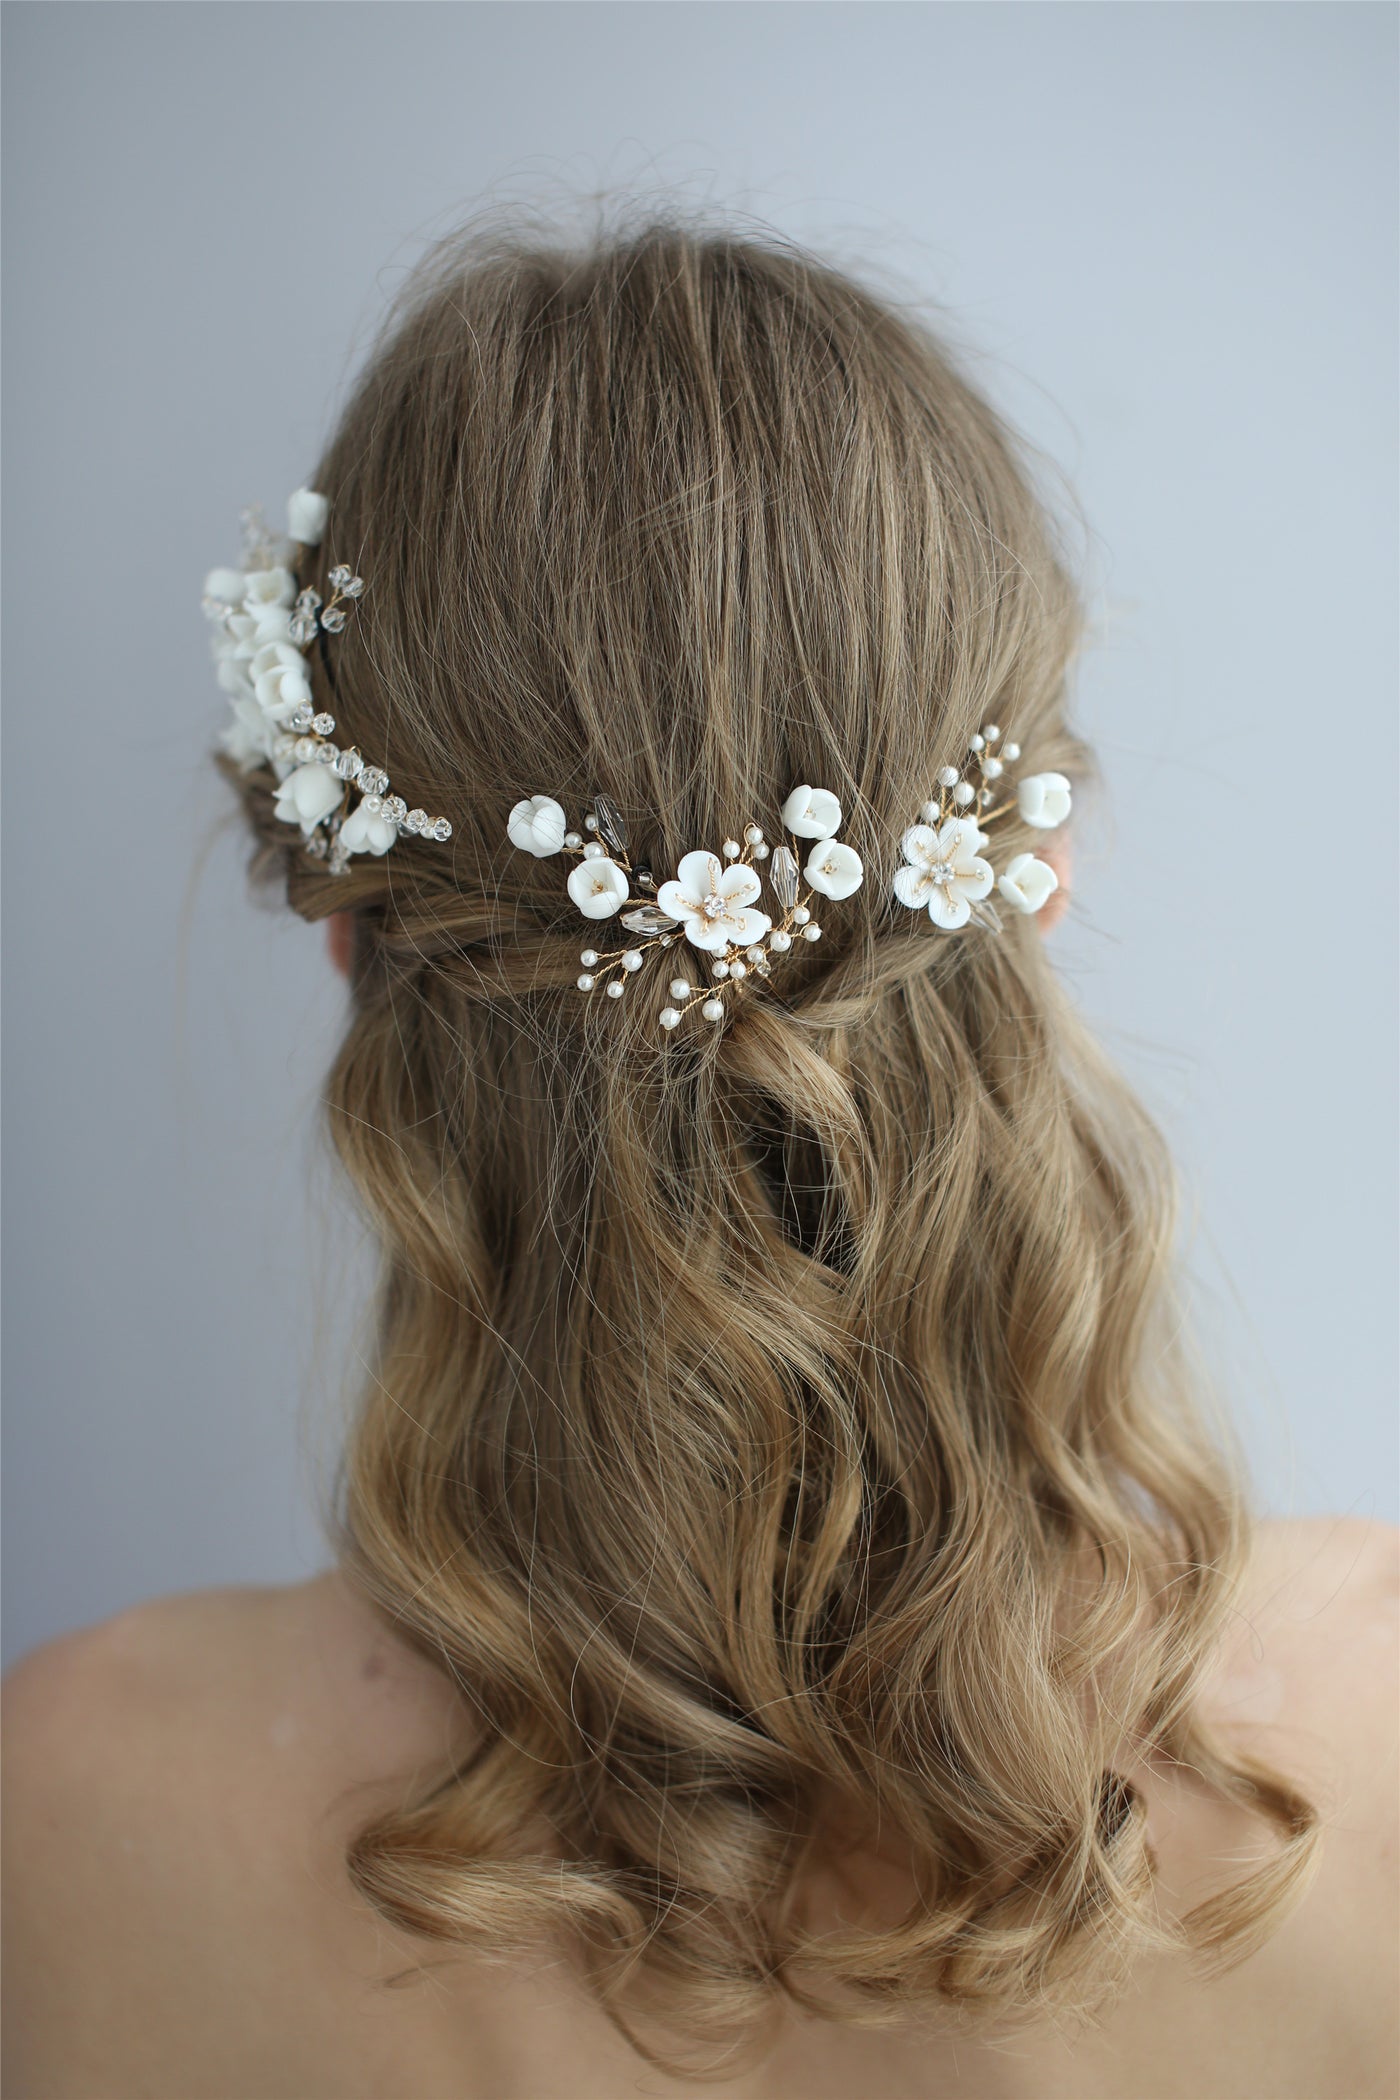 Handmade Bridal Hair Accessories - Ceramic Hair Side Comb